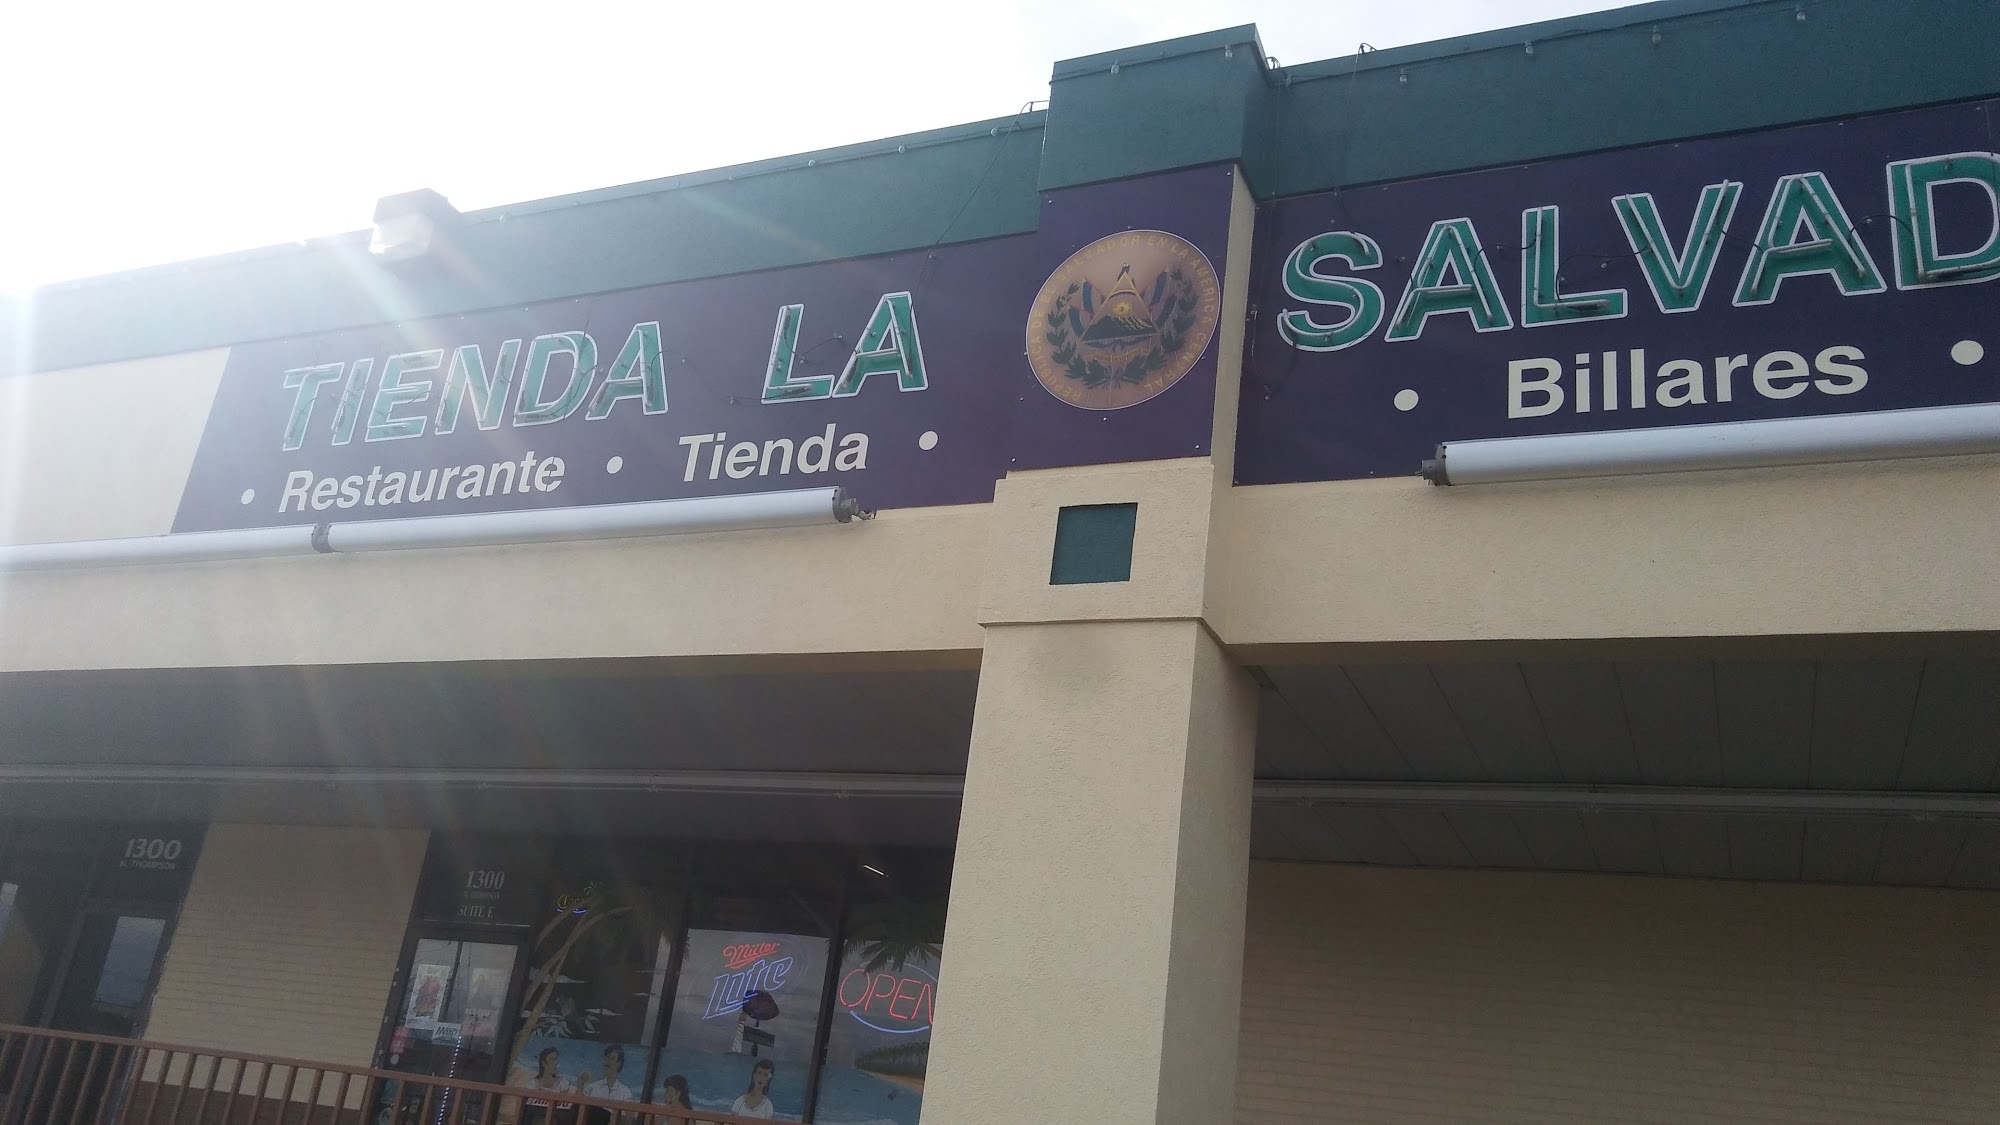 Tienda La Salvadorena